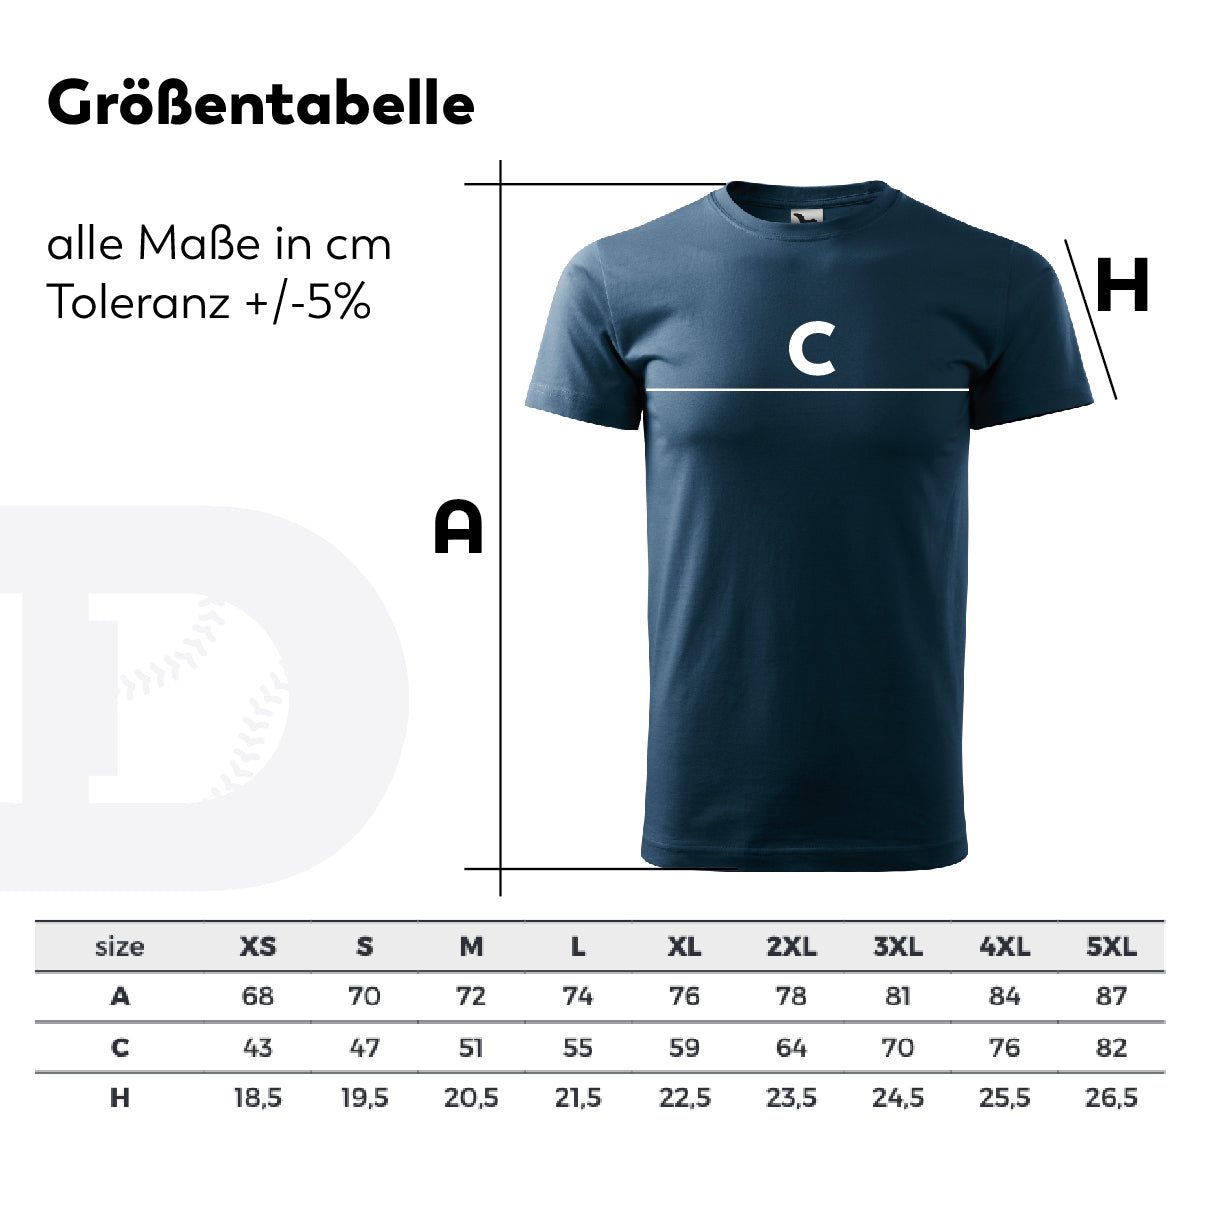 Softball | T-Shirt Unisex in 2 Farben – DUKES OldSchool #2